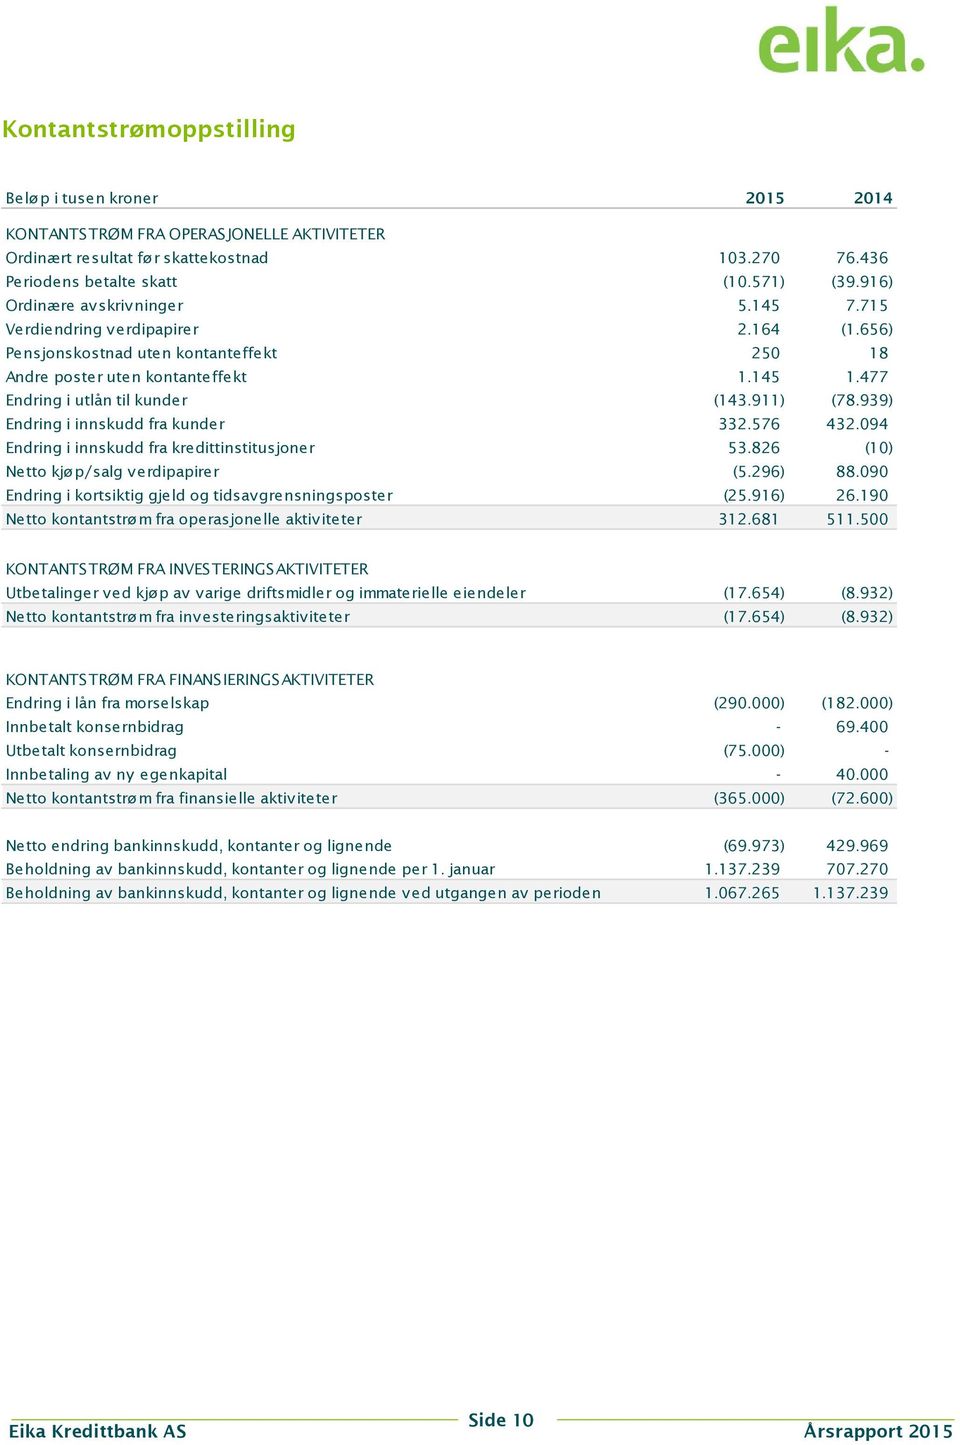 911) (78.939) Endring i innskudd fra kunder 332.576 432.094 Endring i innskudd fra kredittinstitusjoner 53.826 (10) Netto kjøp/salg verdipapirer (5.296) 88.